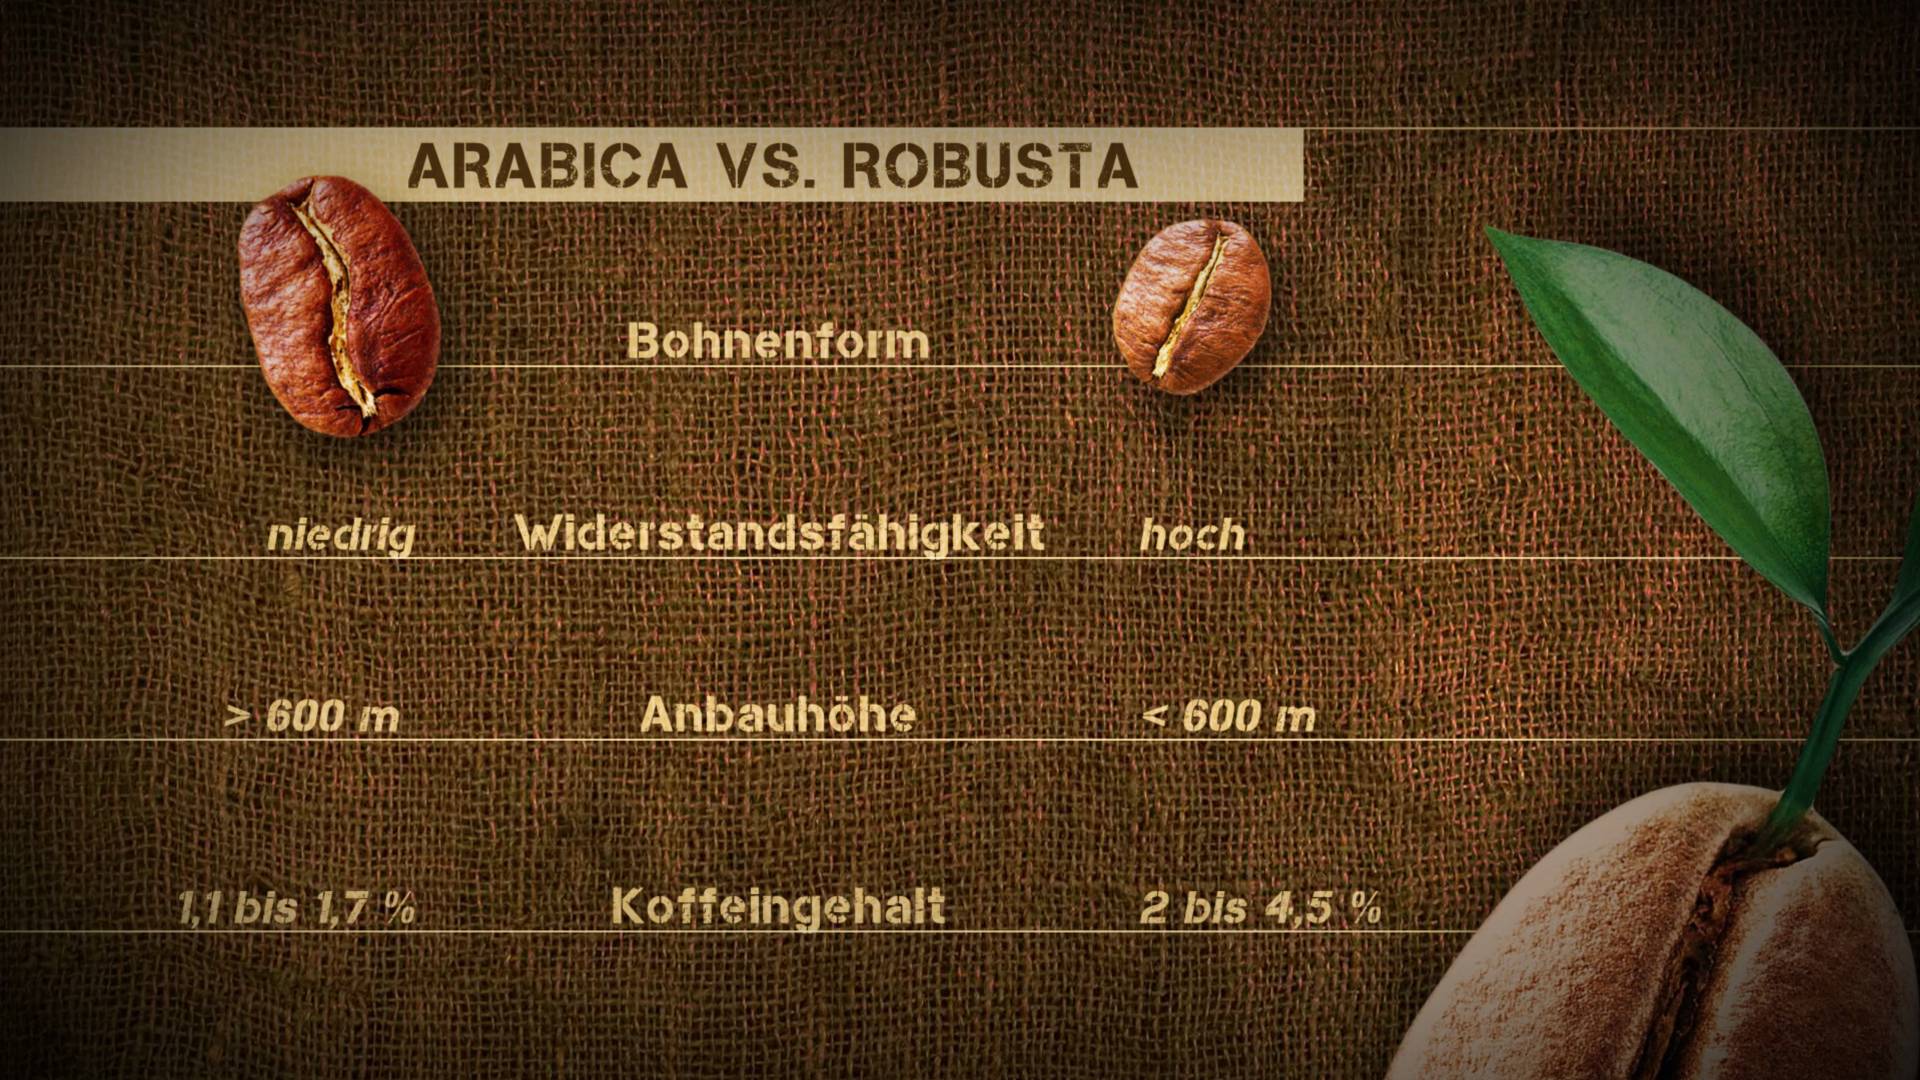 Graphic – comparison of coffee types Arabica vs Robusta